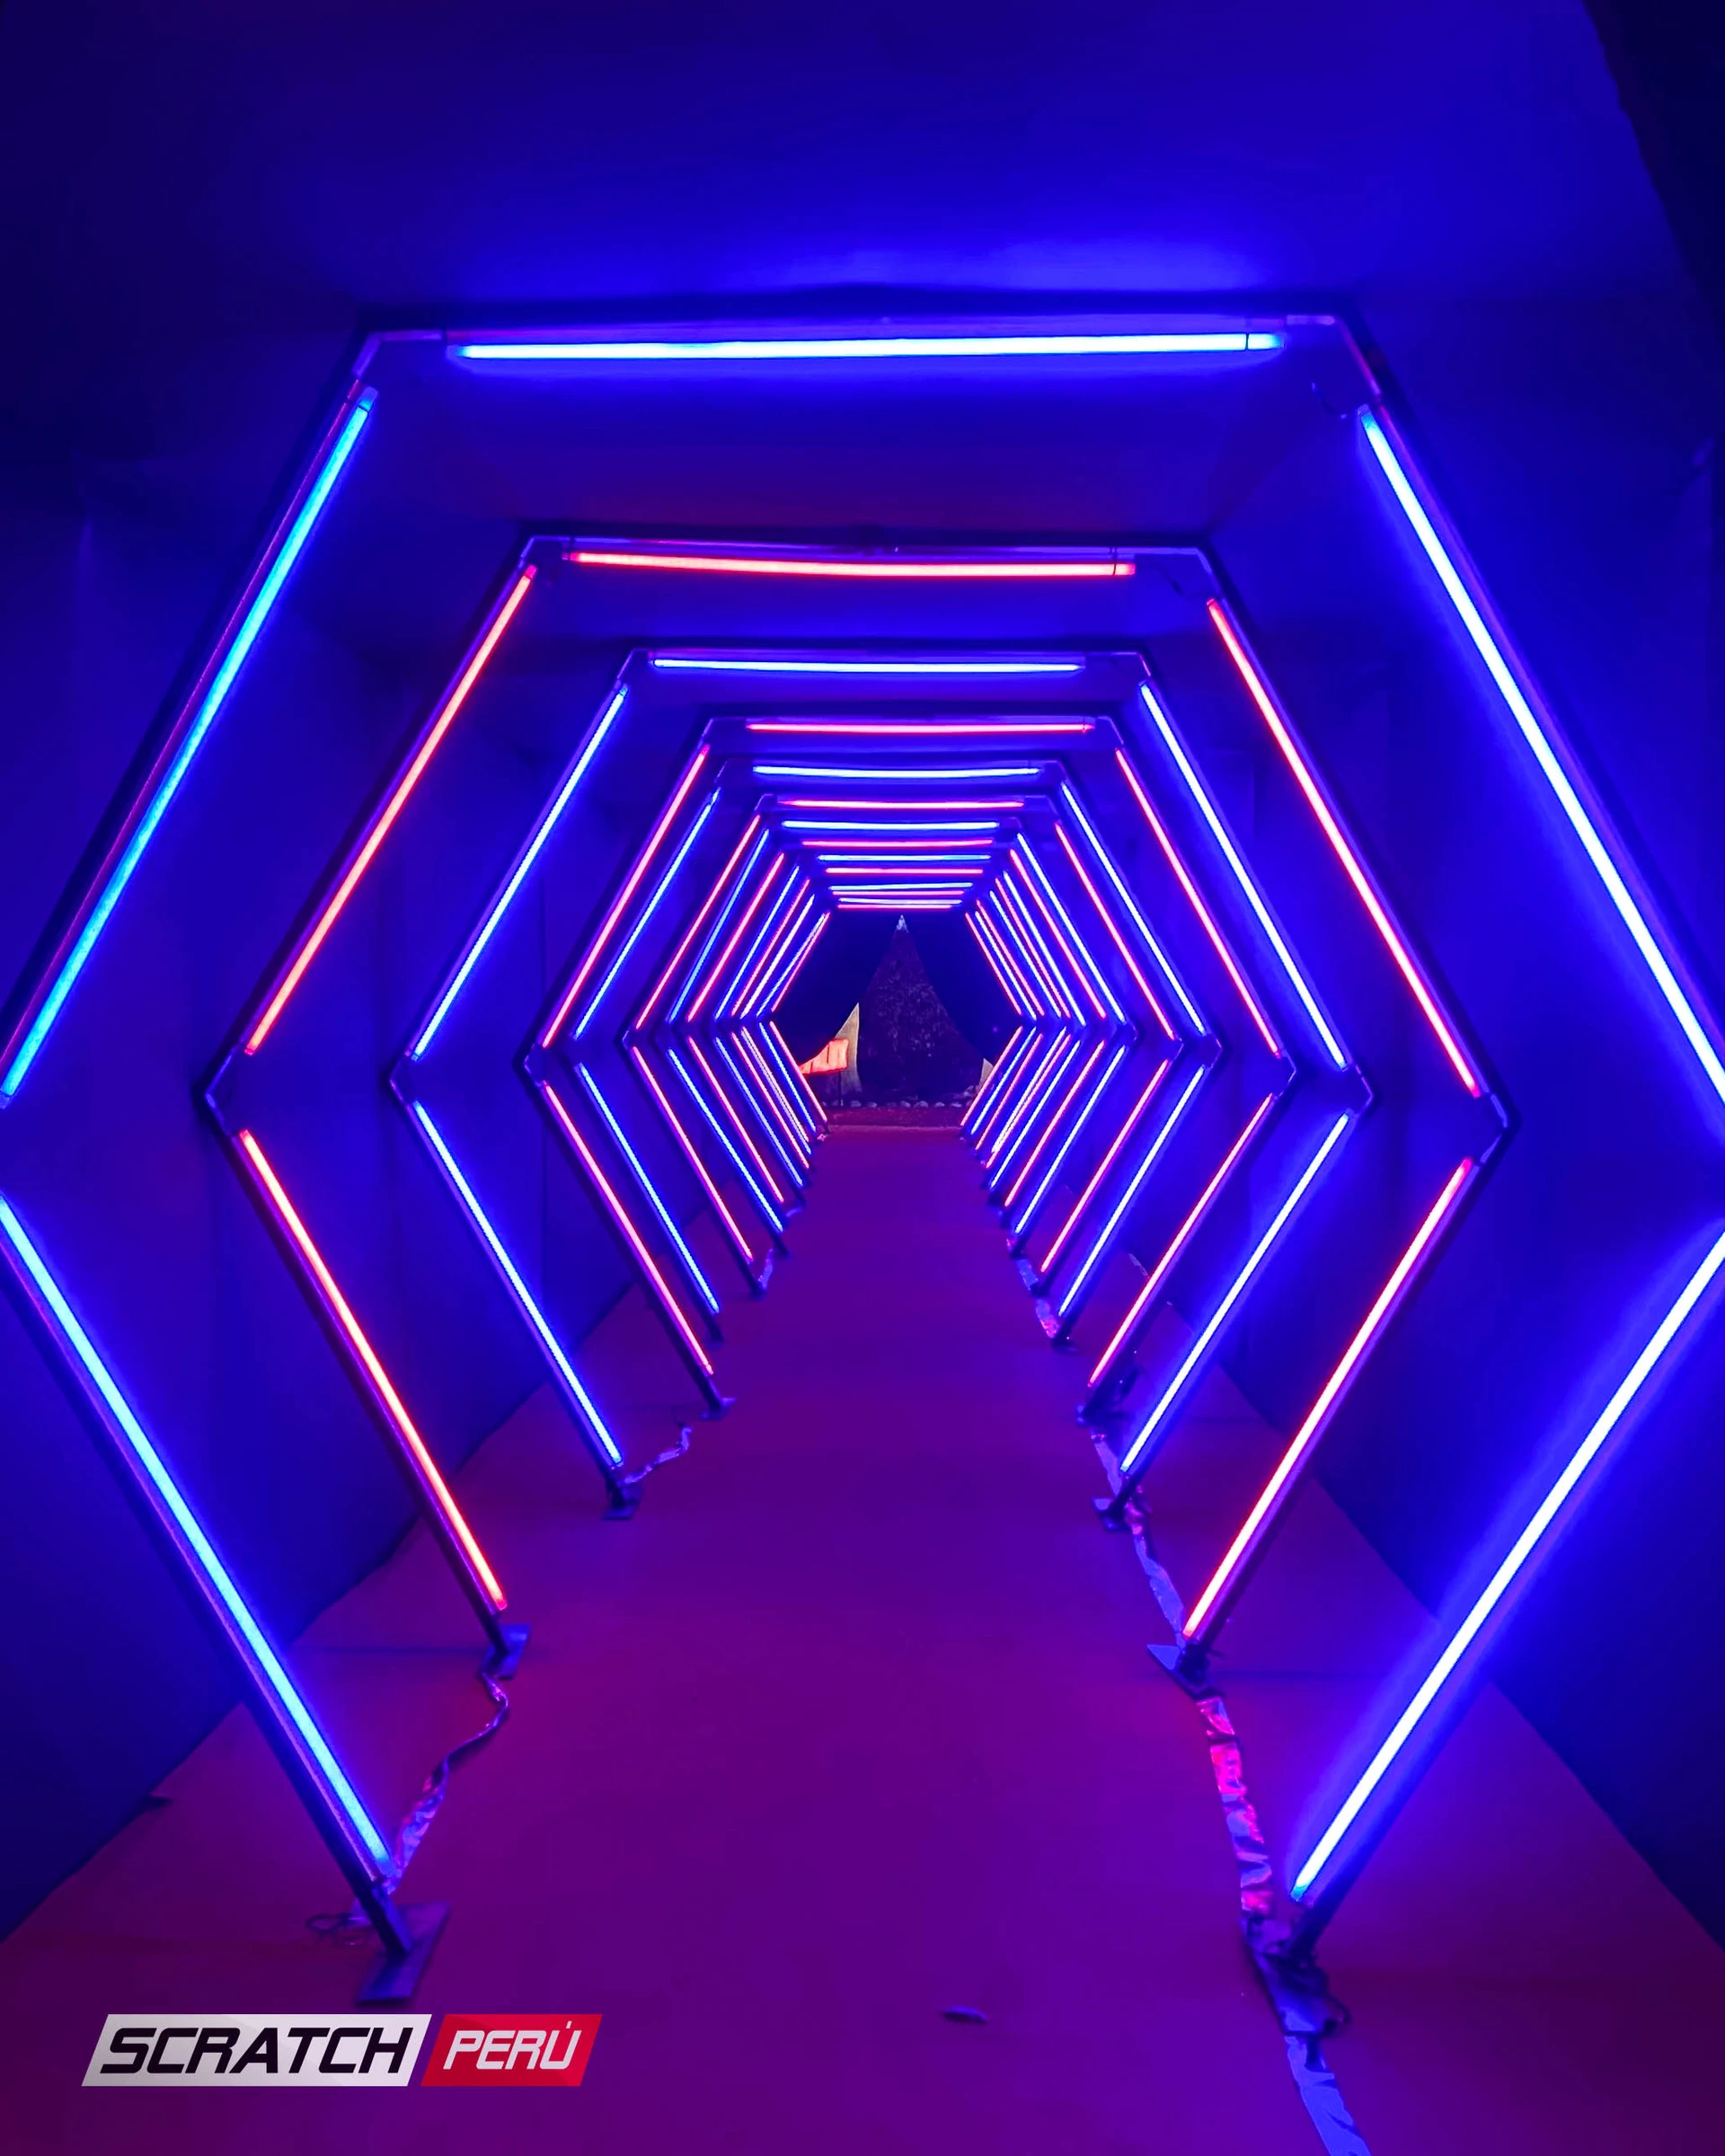 Túnel LED hexagonal rojo y azul: Efectos de luz vibrantes en un pasillo, creando una experiencia visual impresionante. - Túnel hexagonal led - scratch perú.